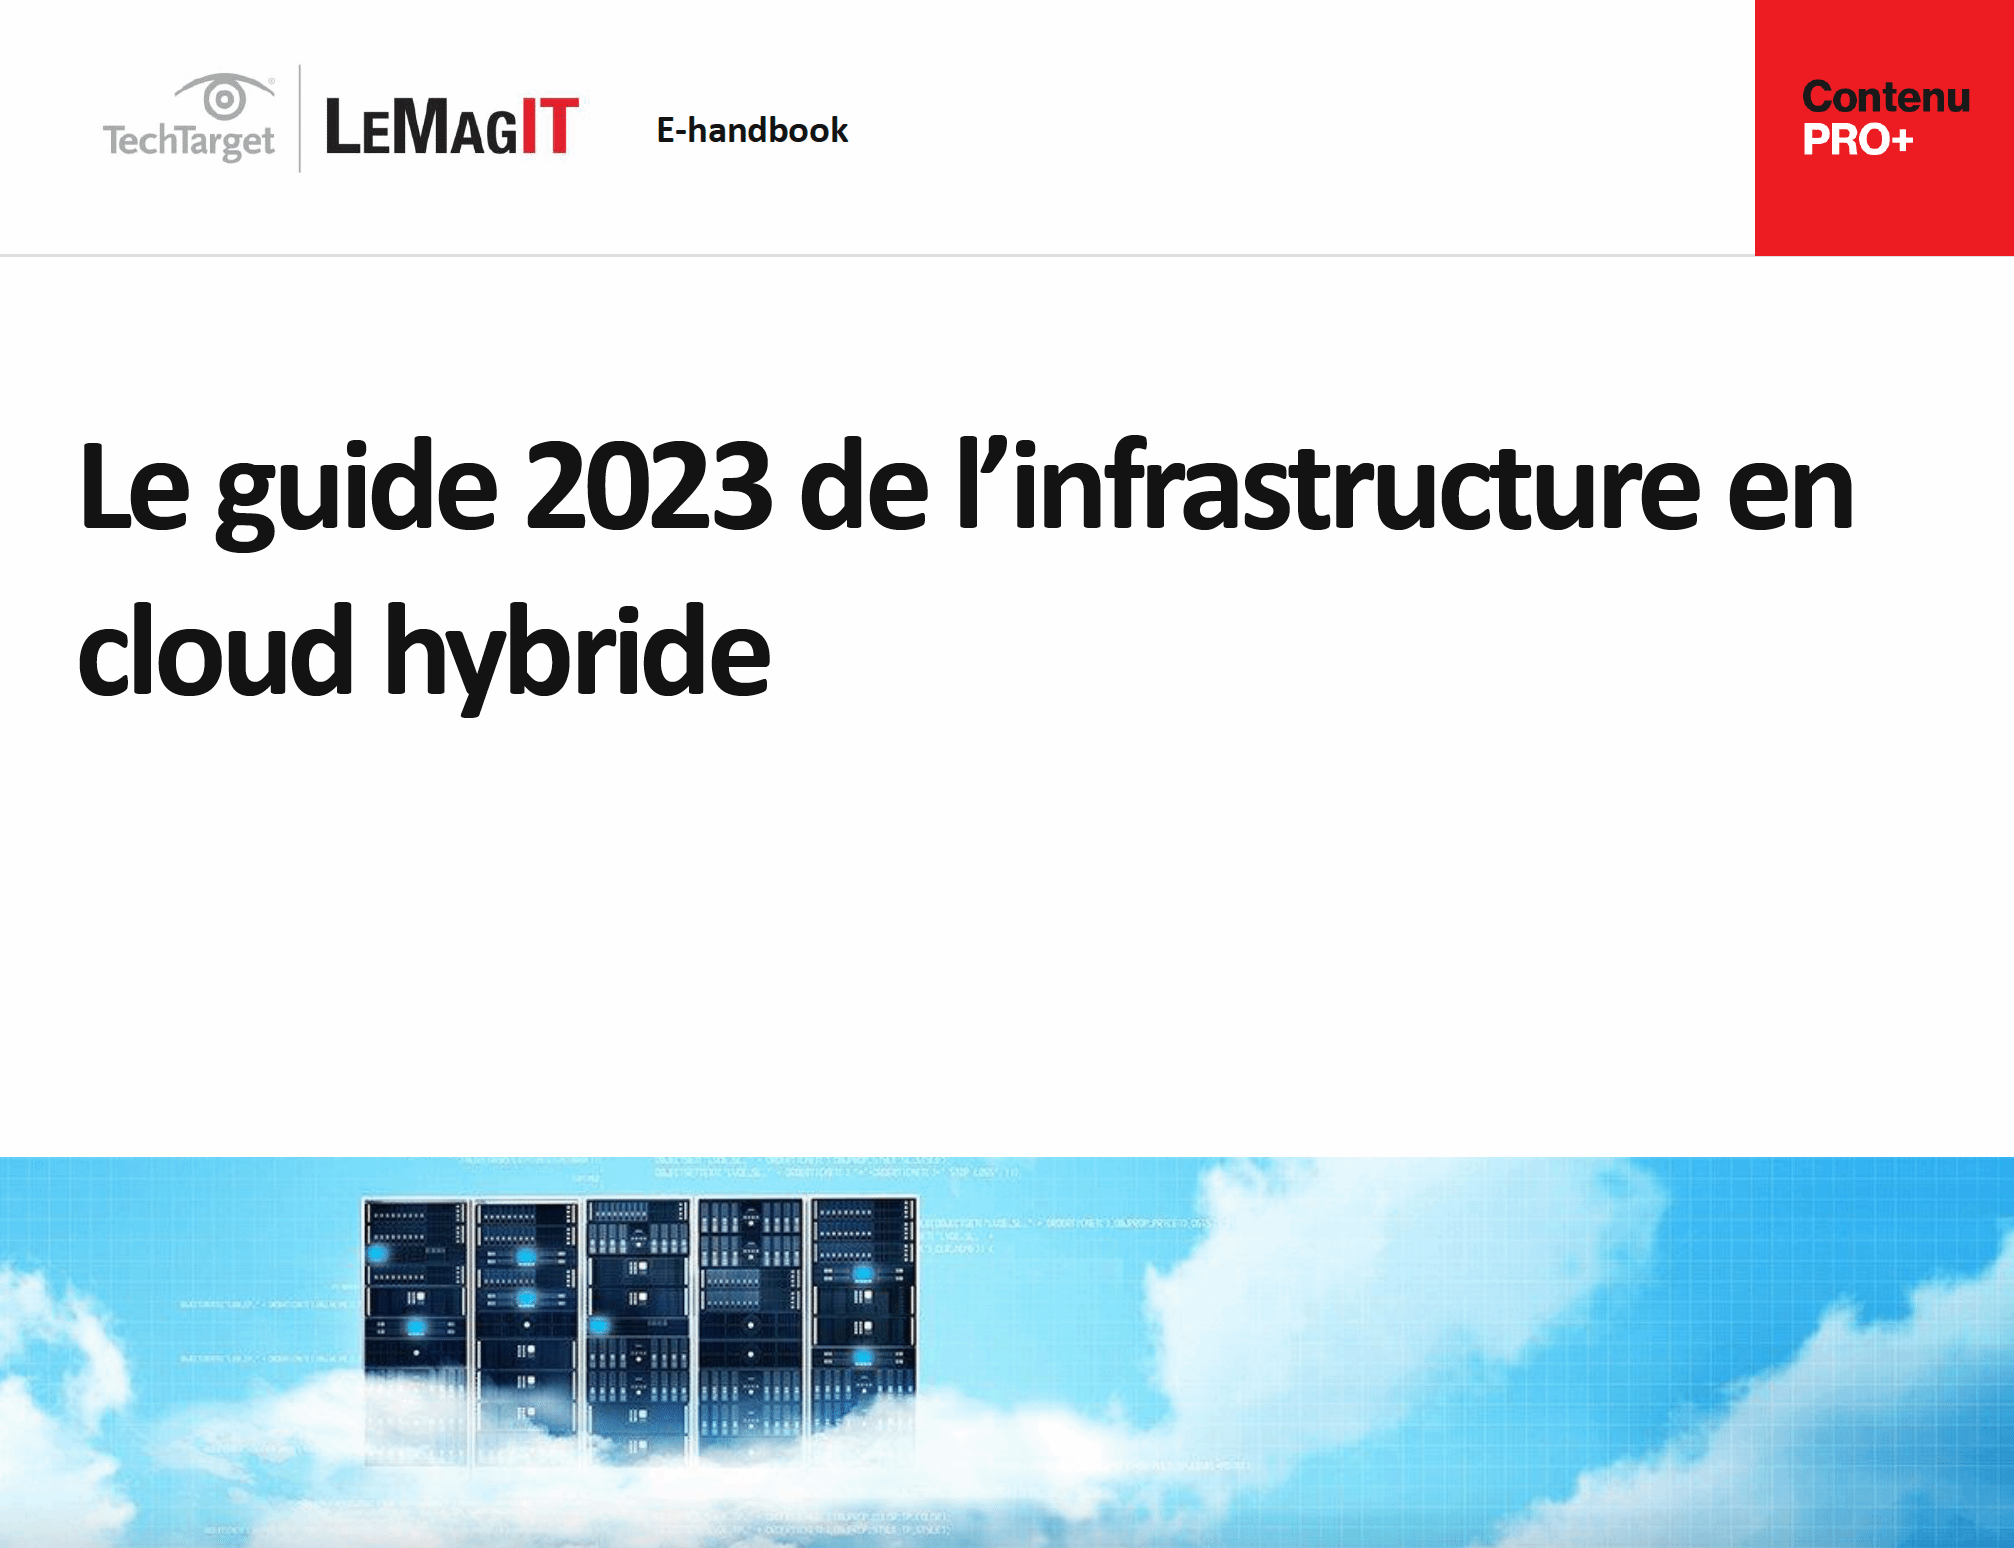 Le guide 2023 de l’infrastructure en cloud hybride